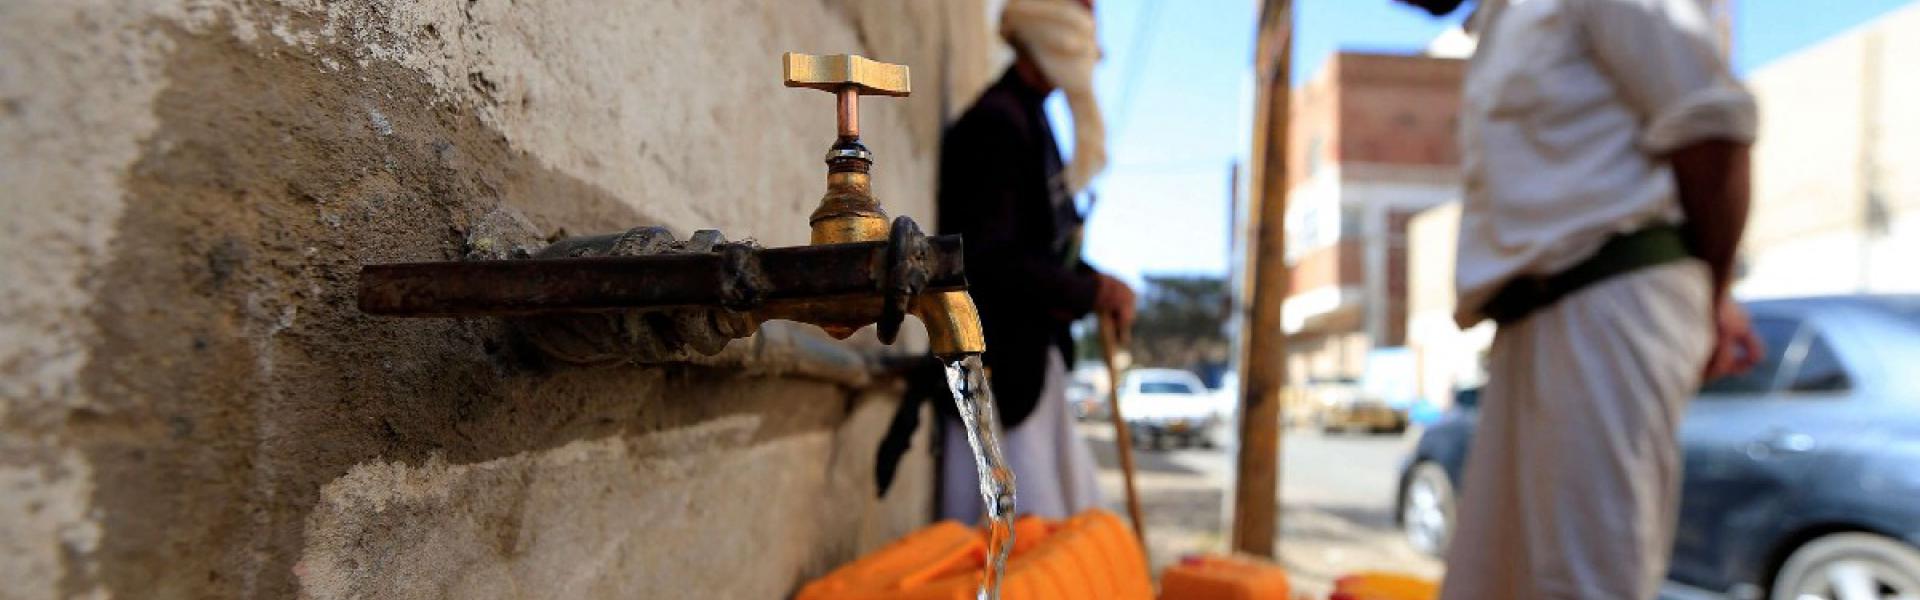 الموارد المائية في اليمن يتهددها النفاد 